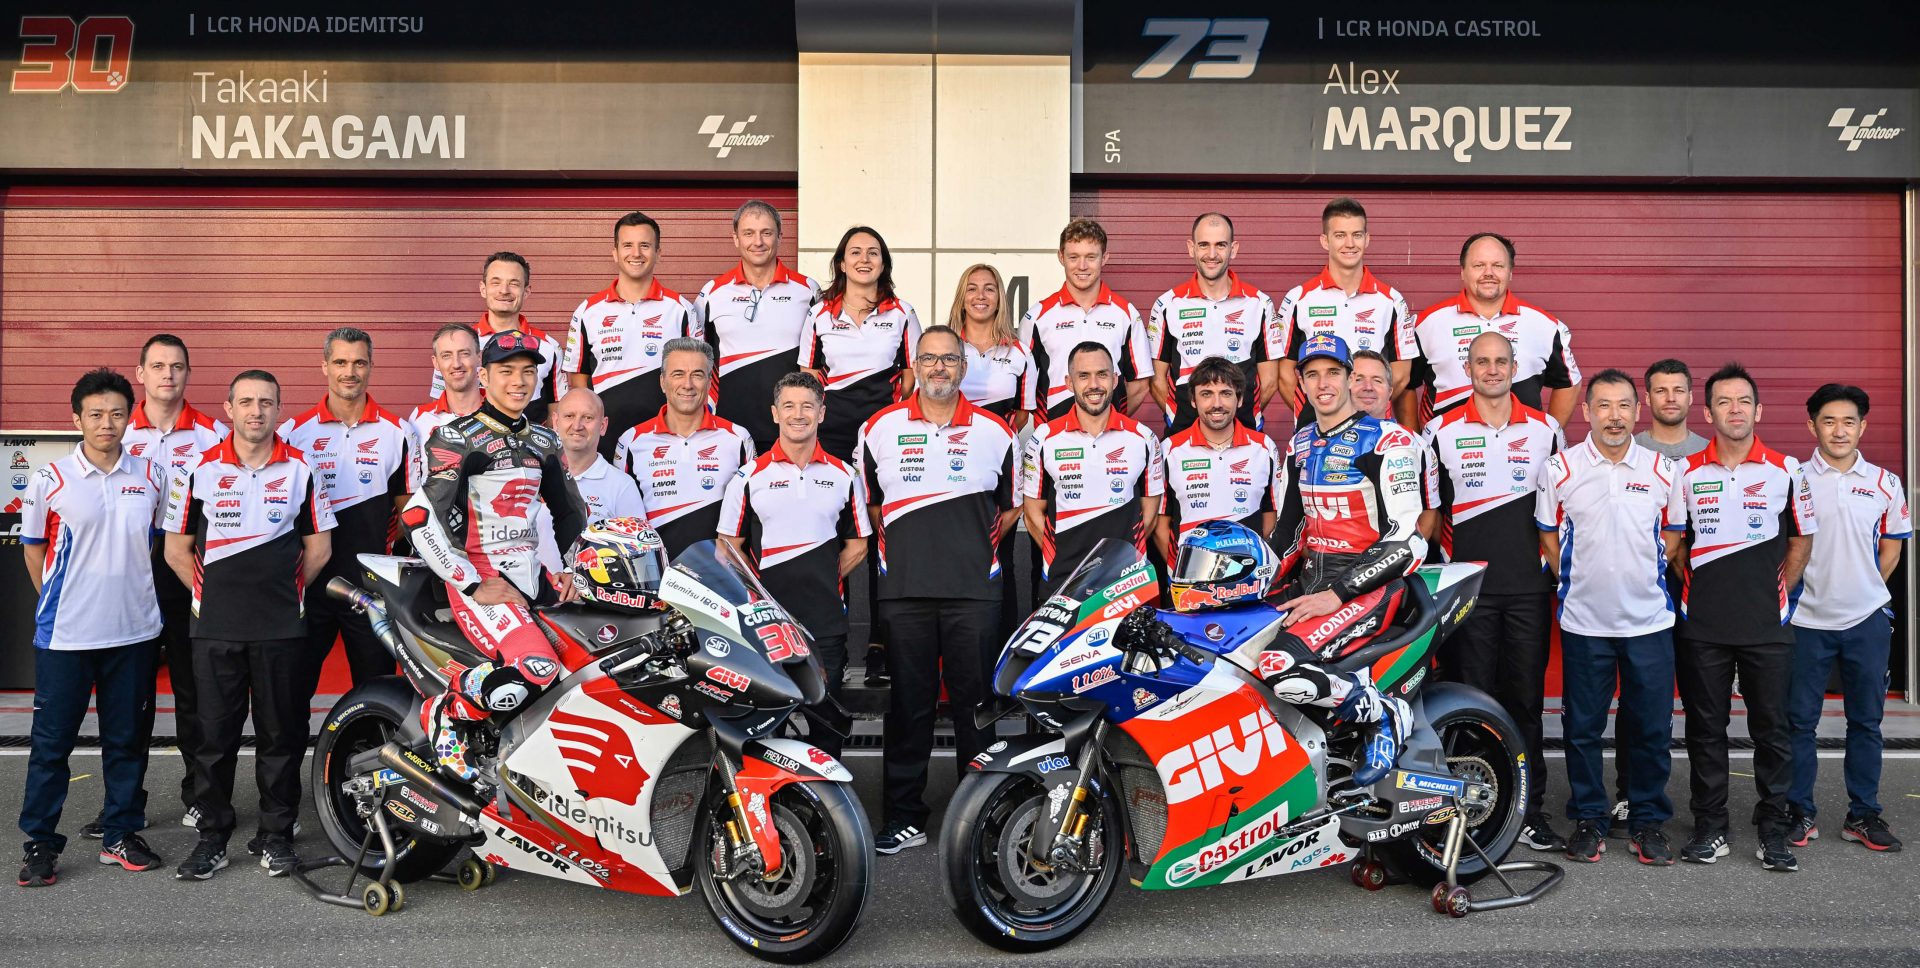 LCR Honda MotoGP Team Motorcycle Racing Team Since 1996